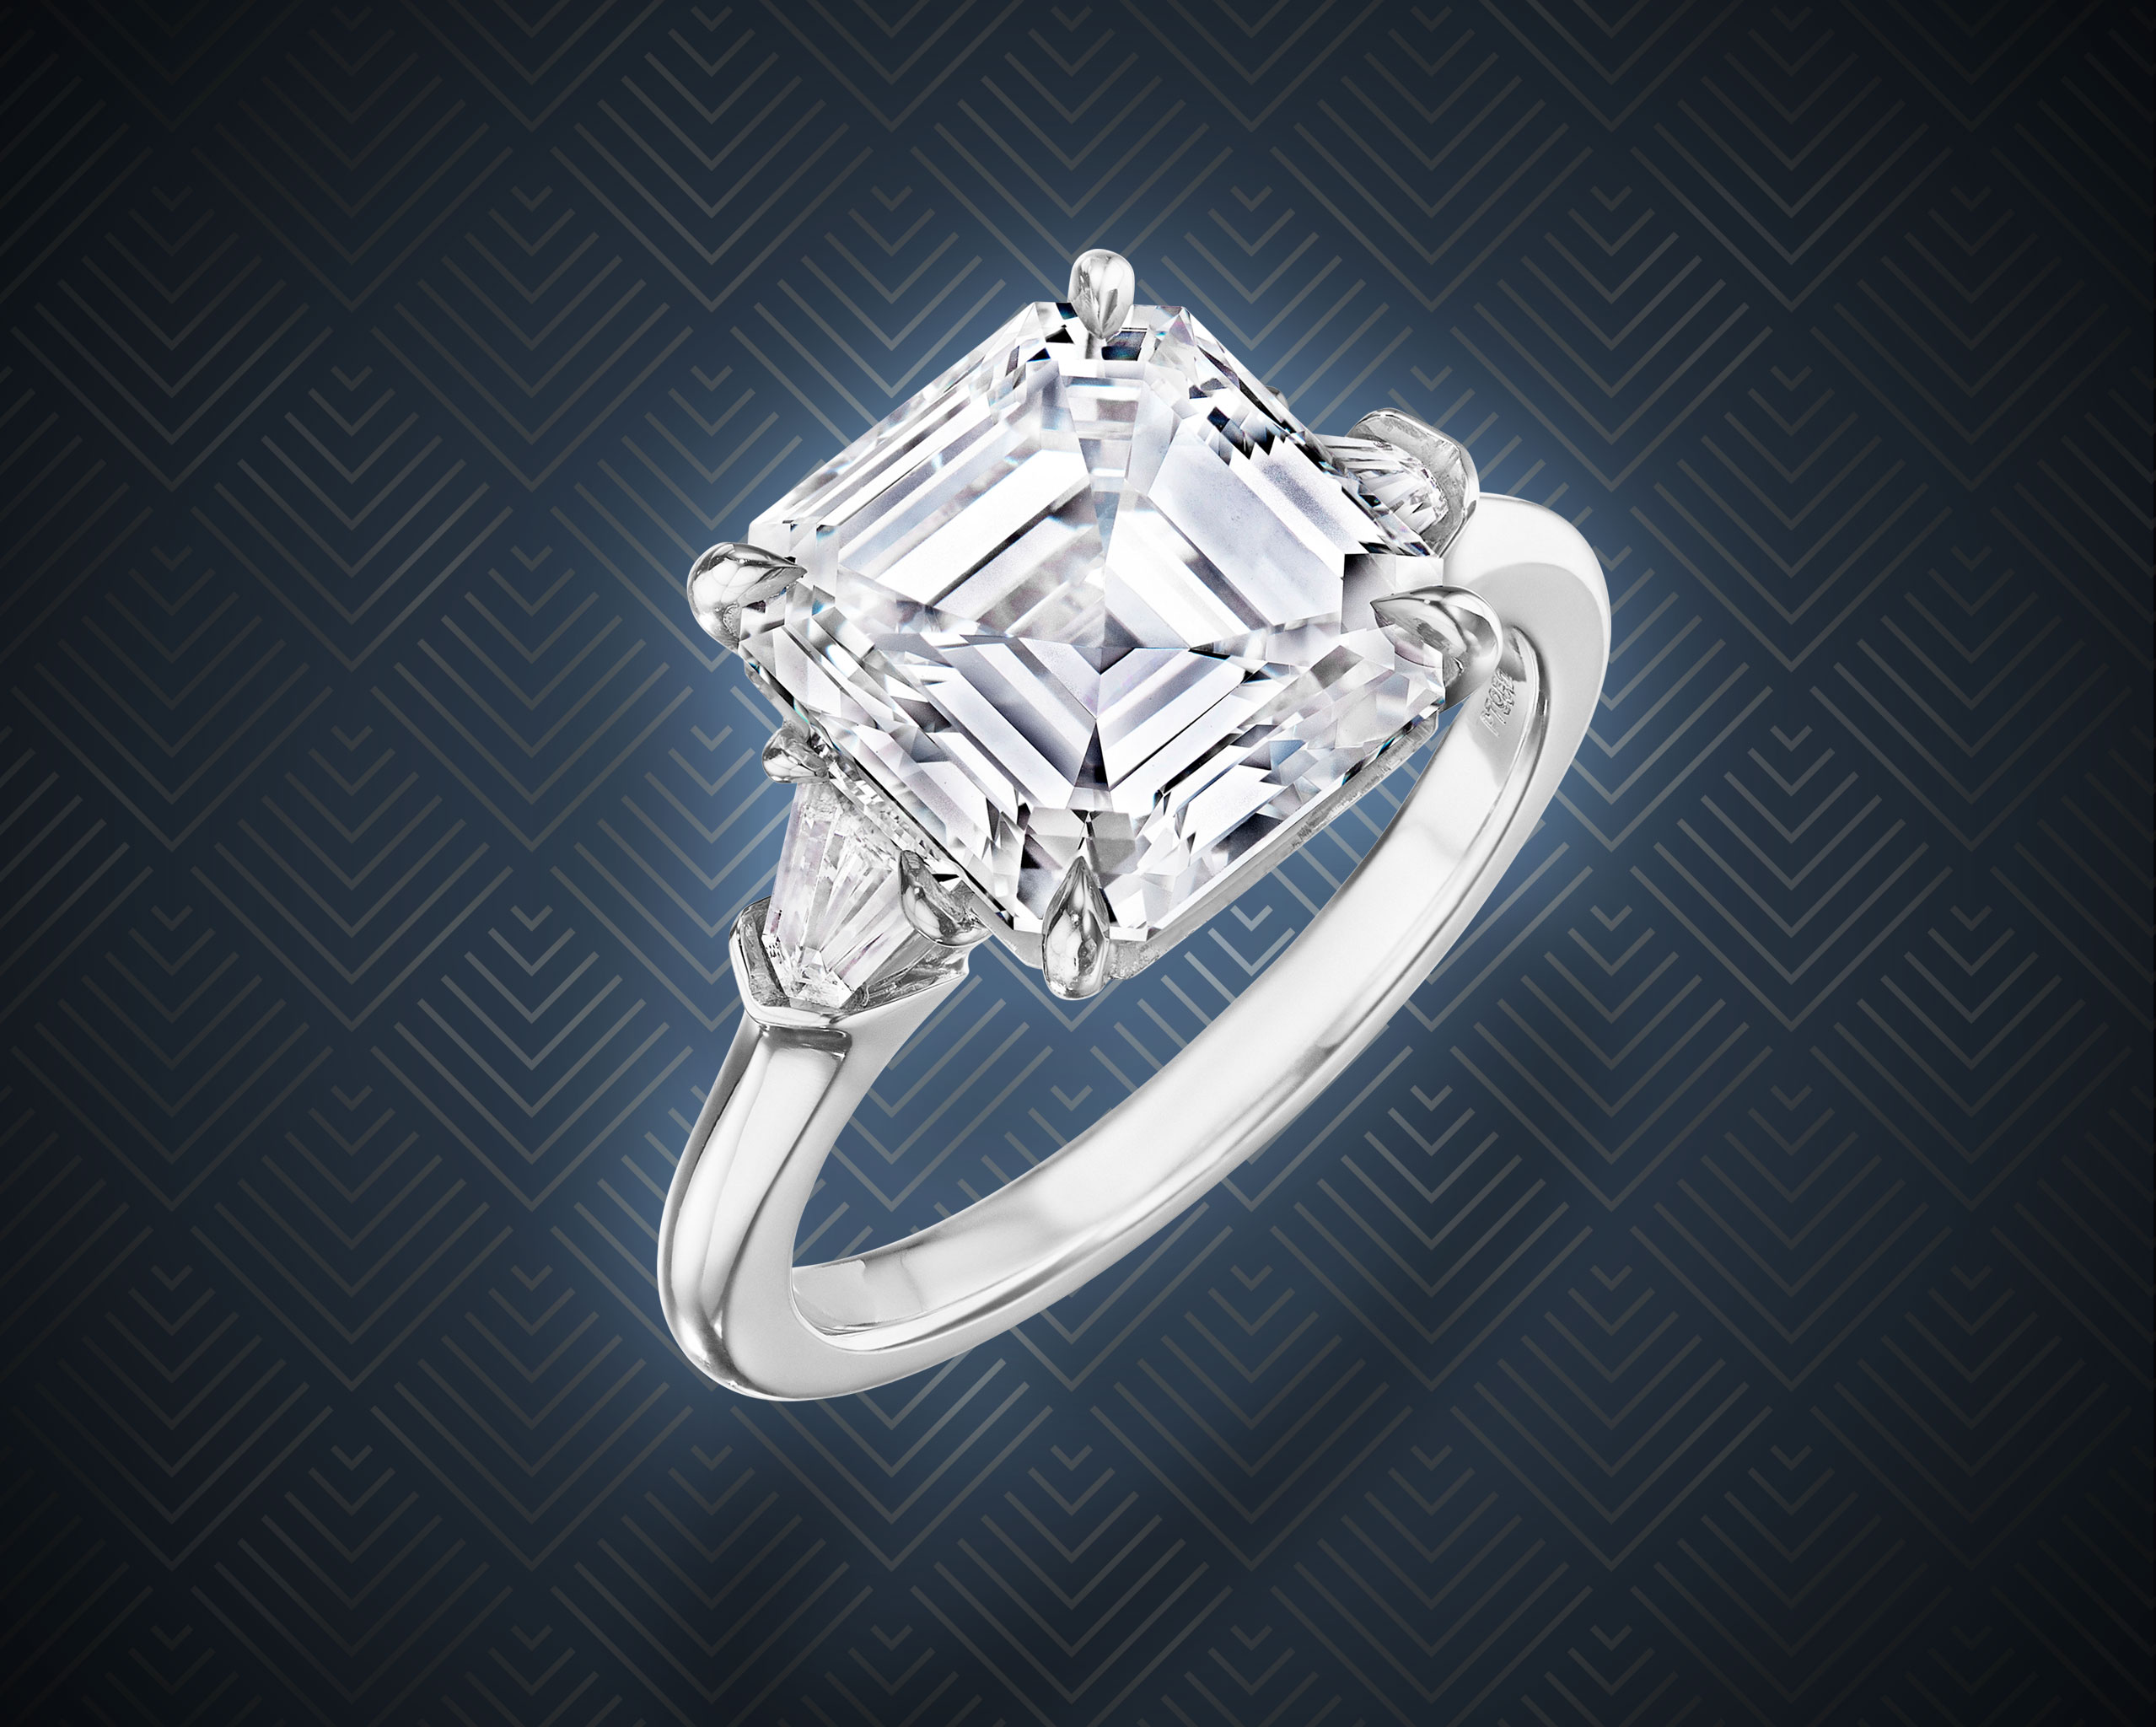 Asscher cut diamond Art Deco ring with platinum band from Lauren Addison